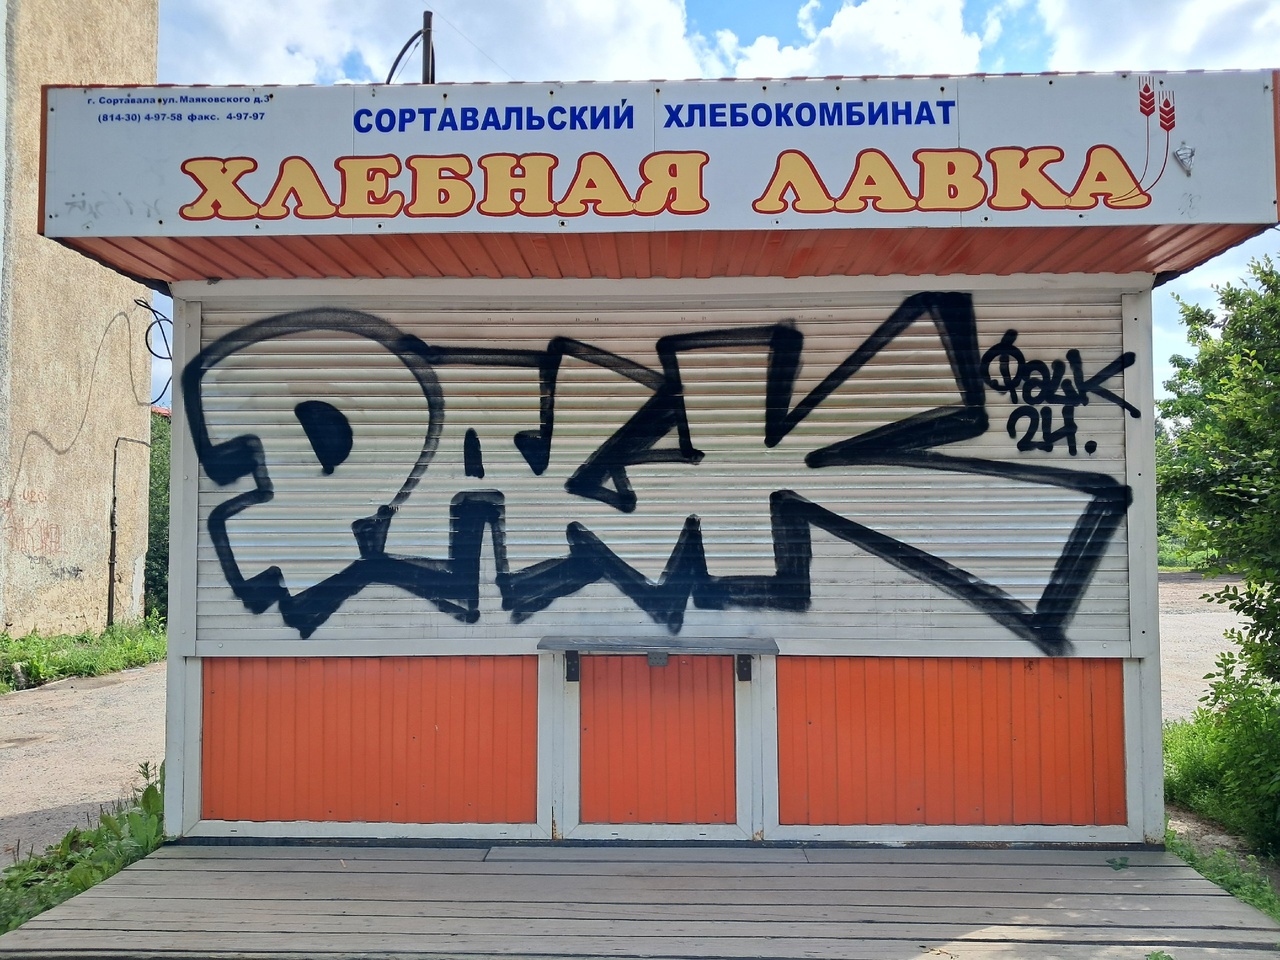 Хлебокомбинат в Сортавале обещает работу для граффитистов